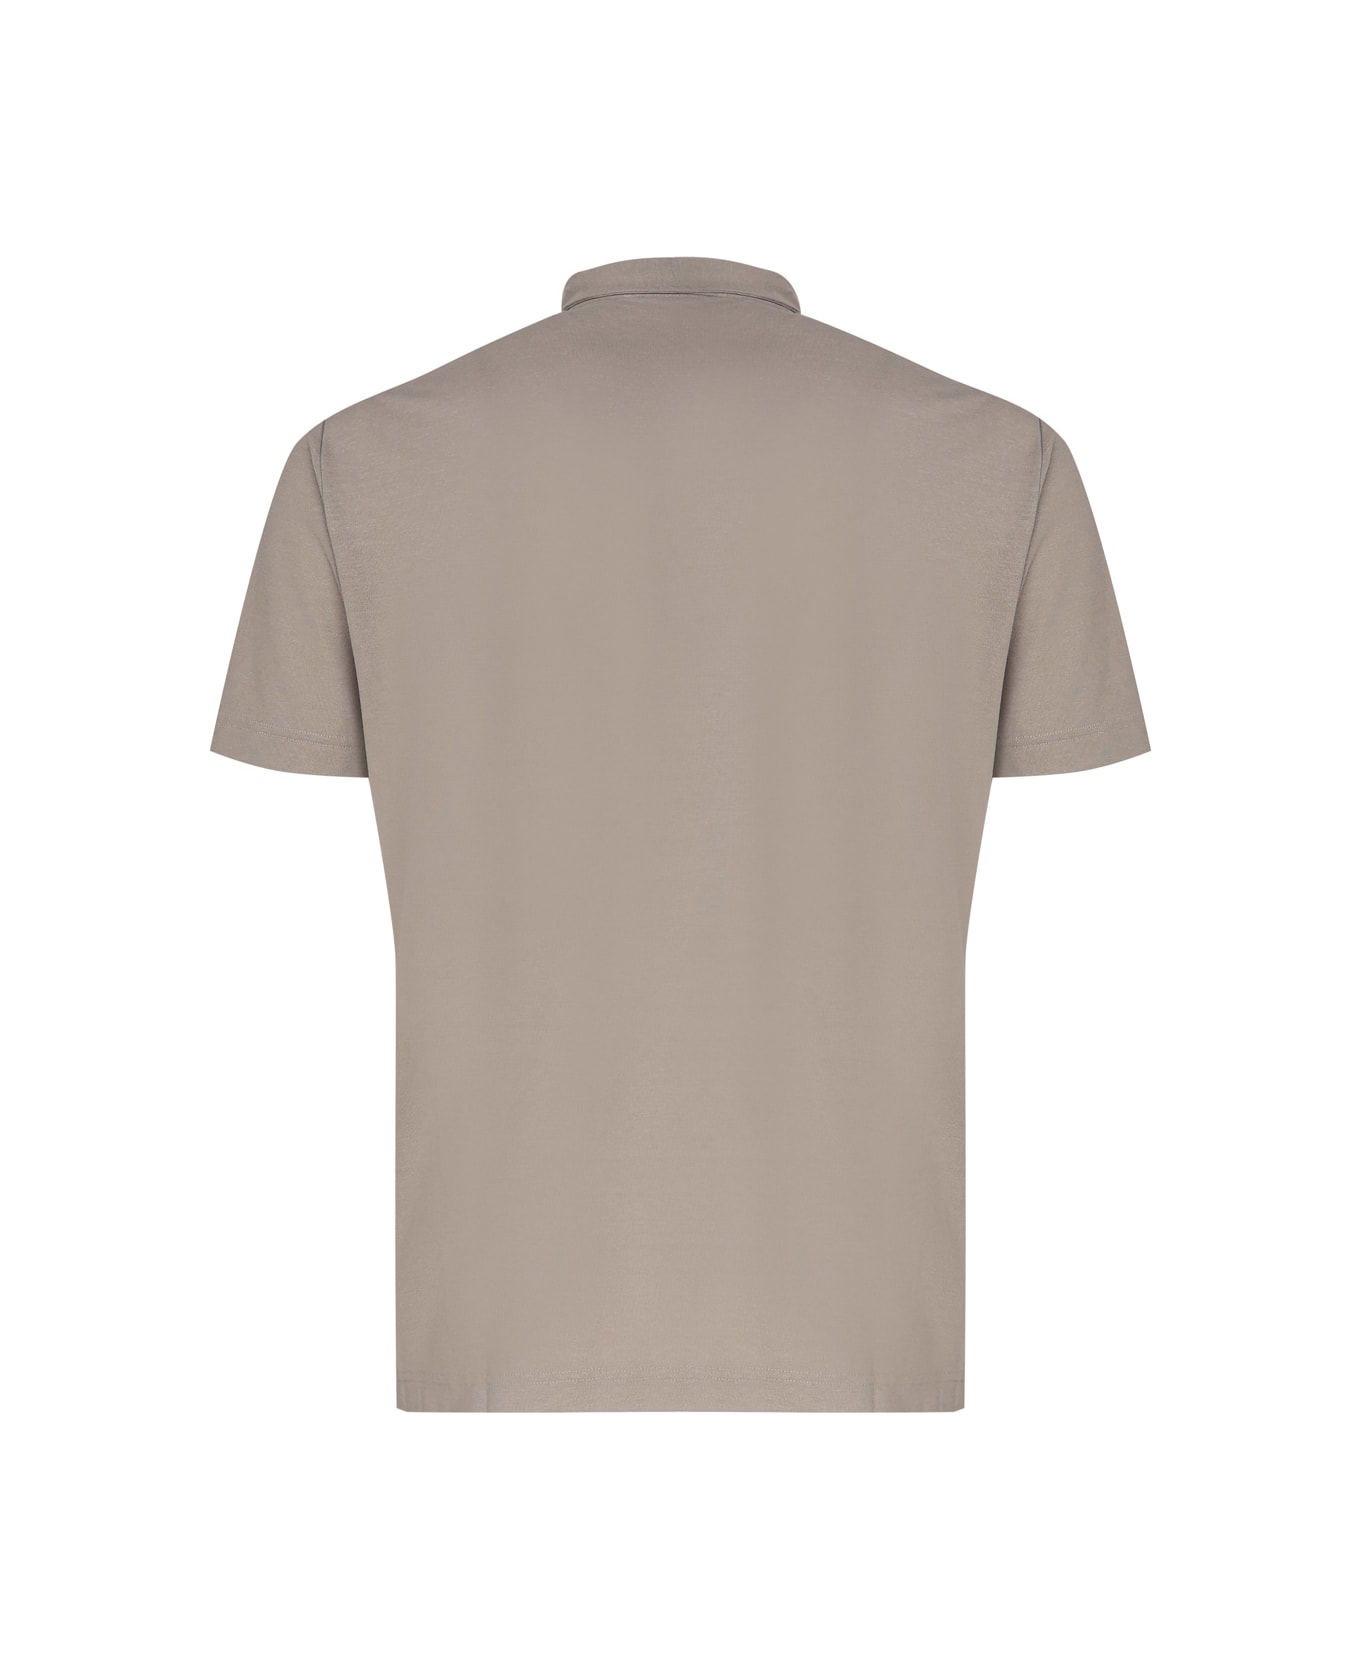 Zanone Cotton Polo T-shirt - Tortora